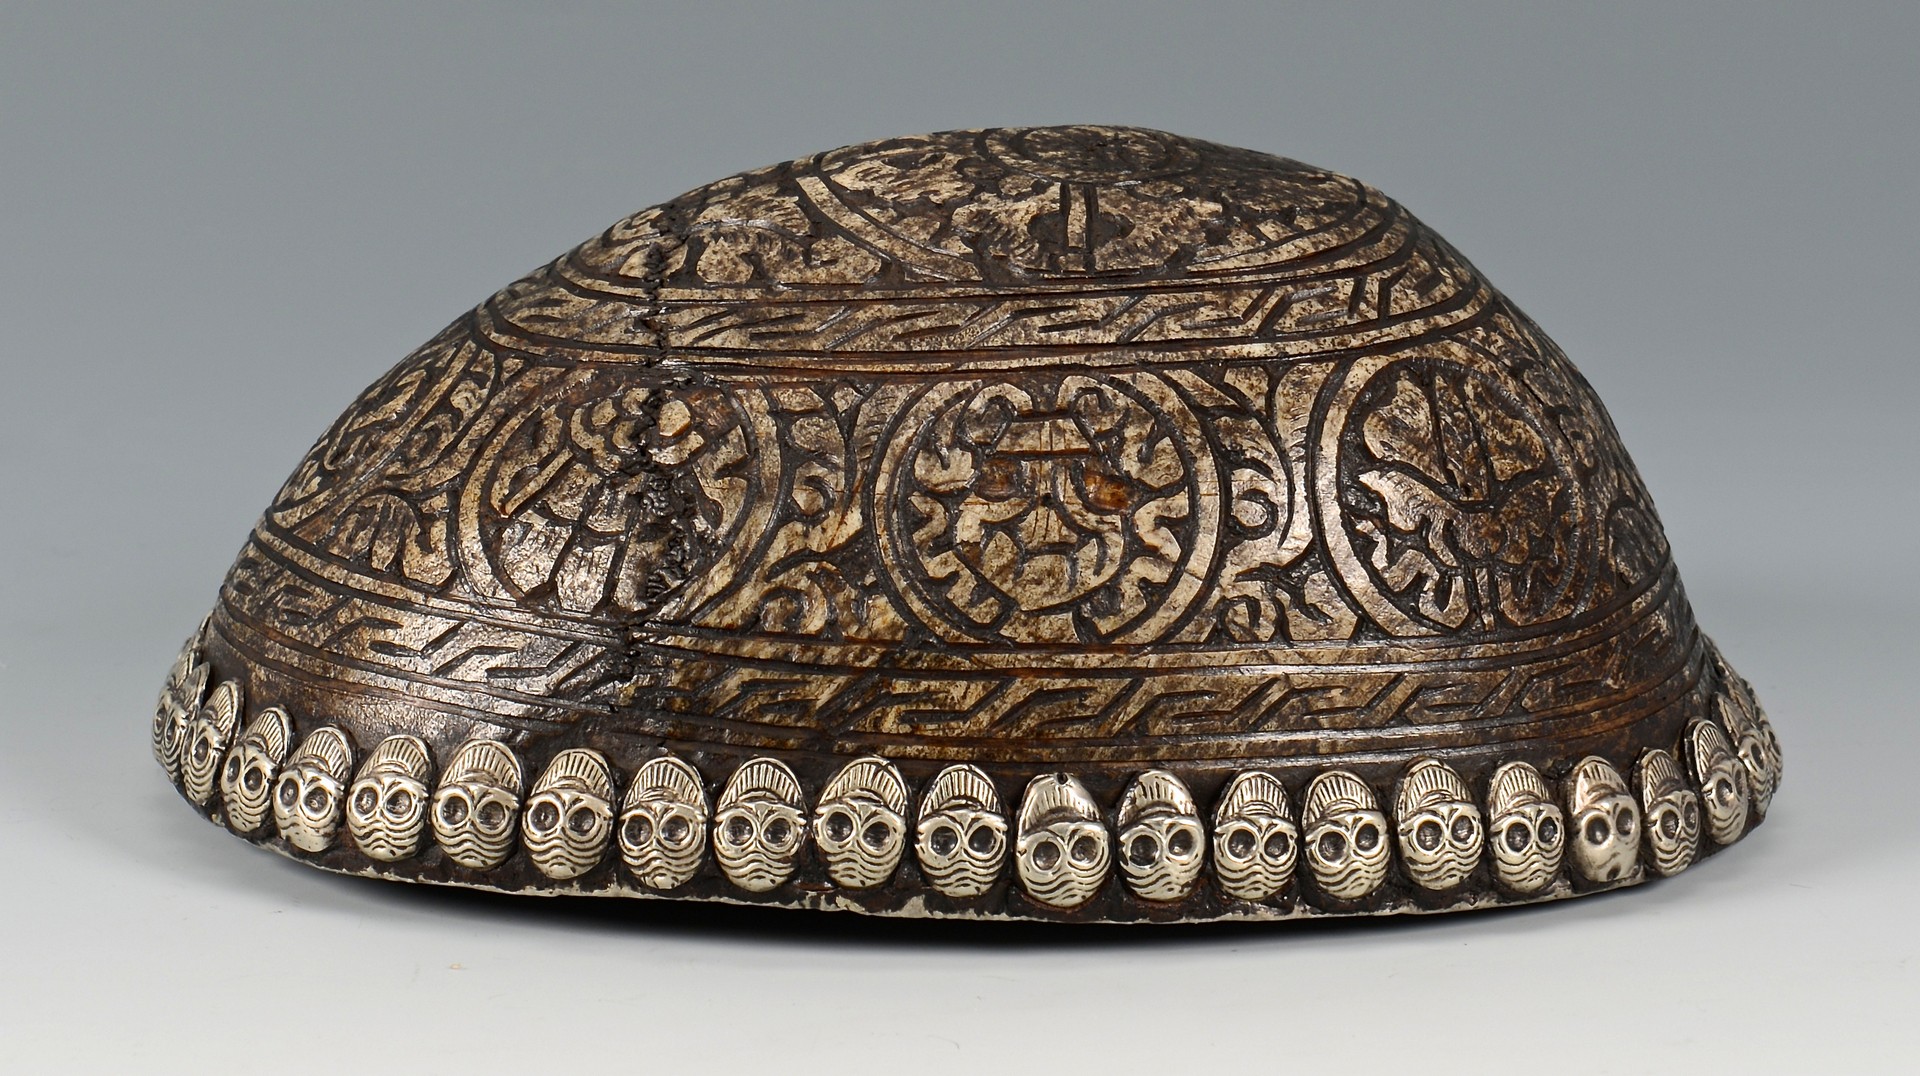 Lot 14: Tibetan Silver Mounted Skull Bowl